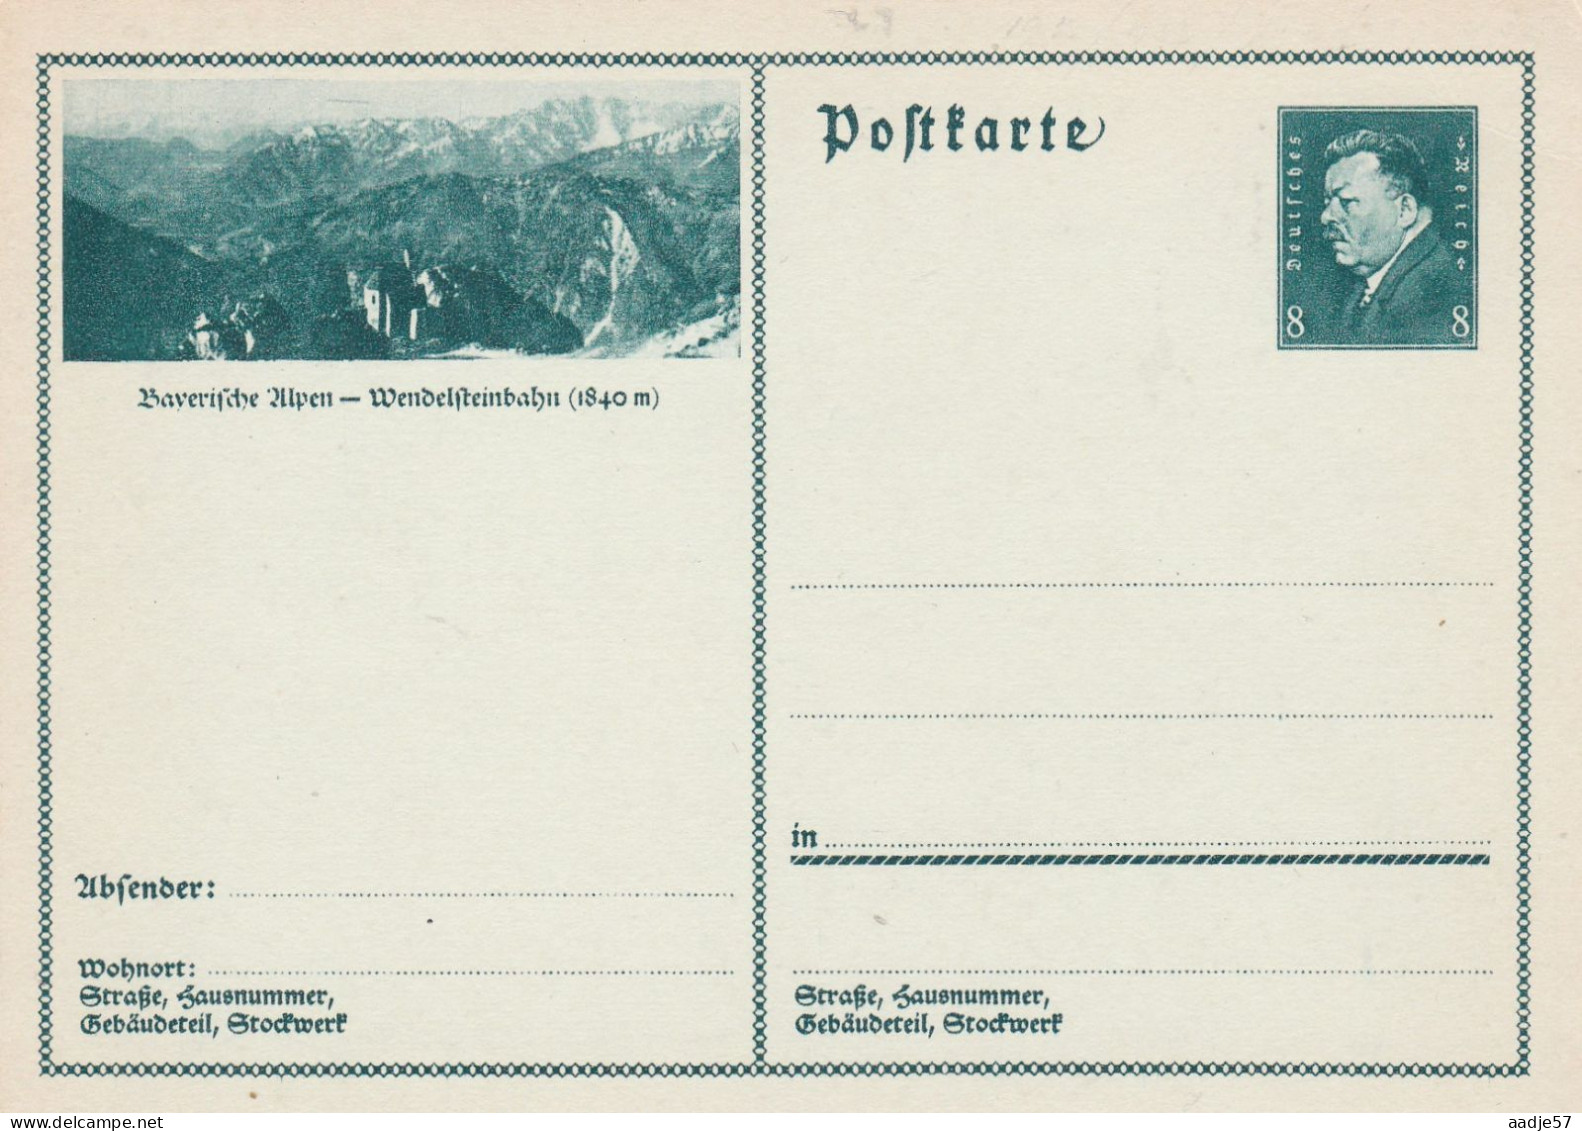 Besucht Baverische Alpen Wendelsteinbahn - Bildpostkarte 1931 -  Mint - Briefkaarten